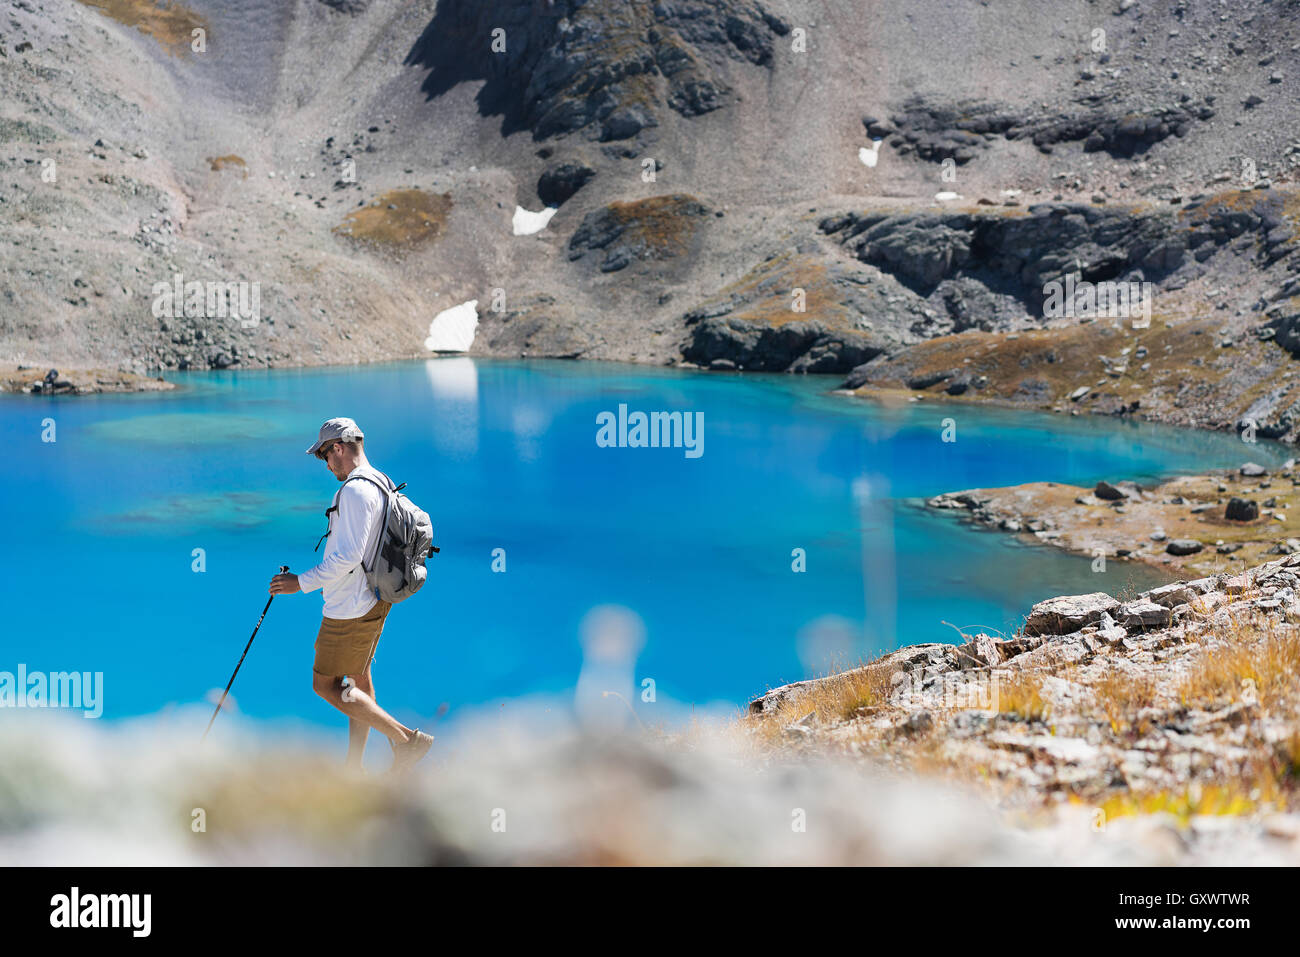 A hiker explores the mountain glacial water near Telluride, Colorado Stock Photo